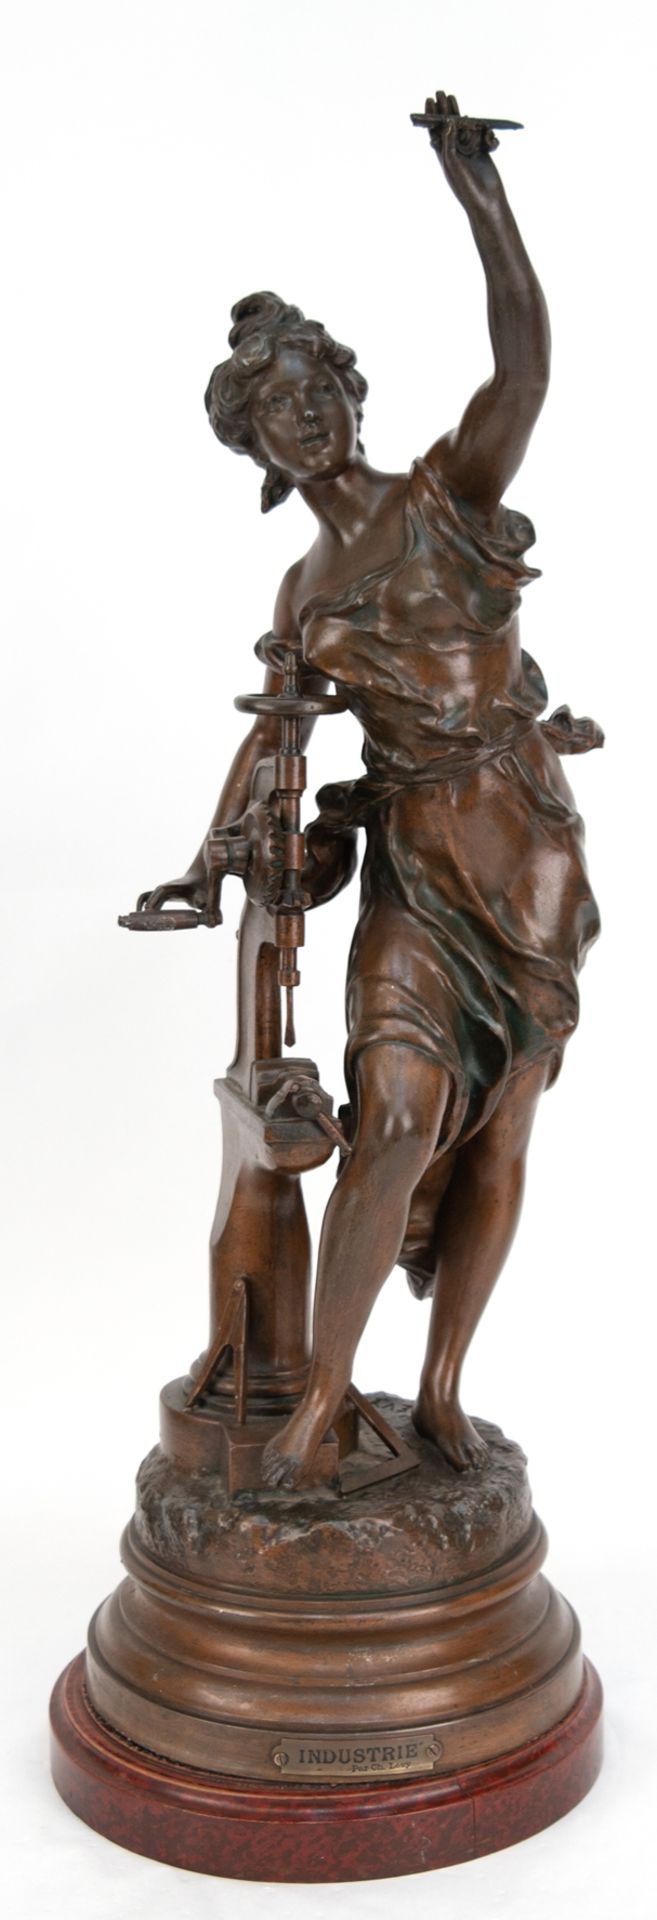 Frauen-Skulptur nach Charles Levy "Industrie", 1. Hälfte 20. Jh., Metallguss  bronziert, bez. "Ch. 